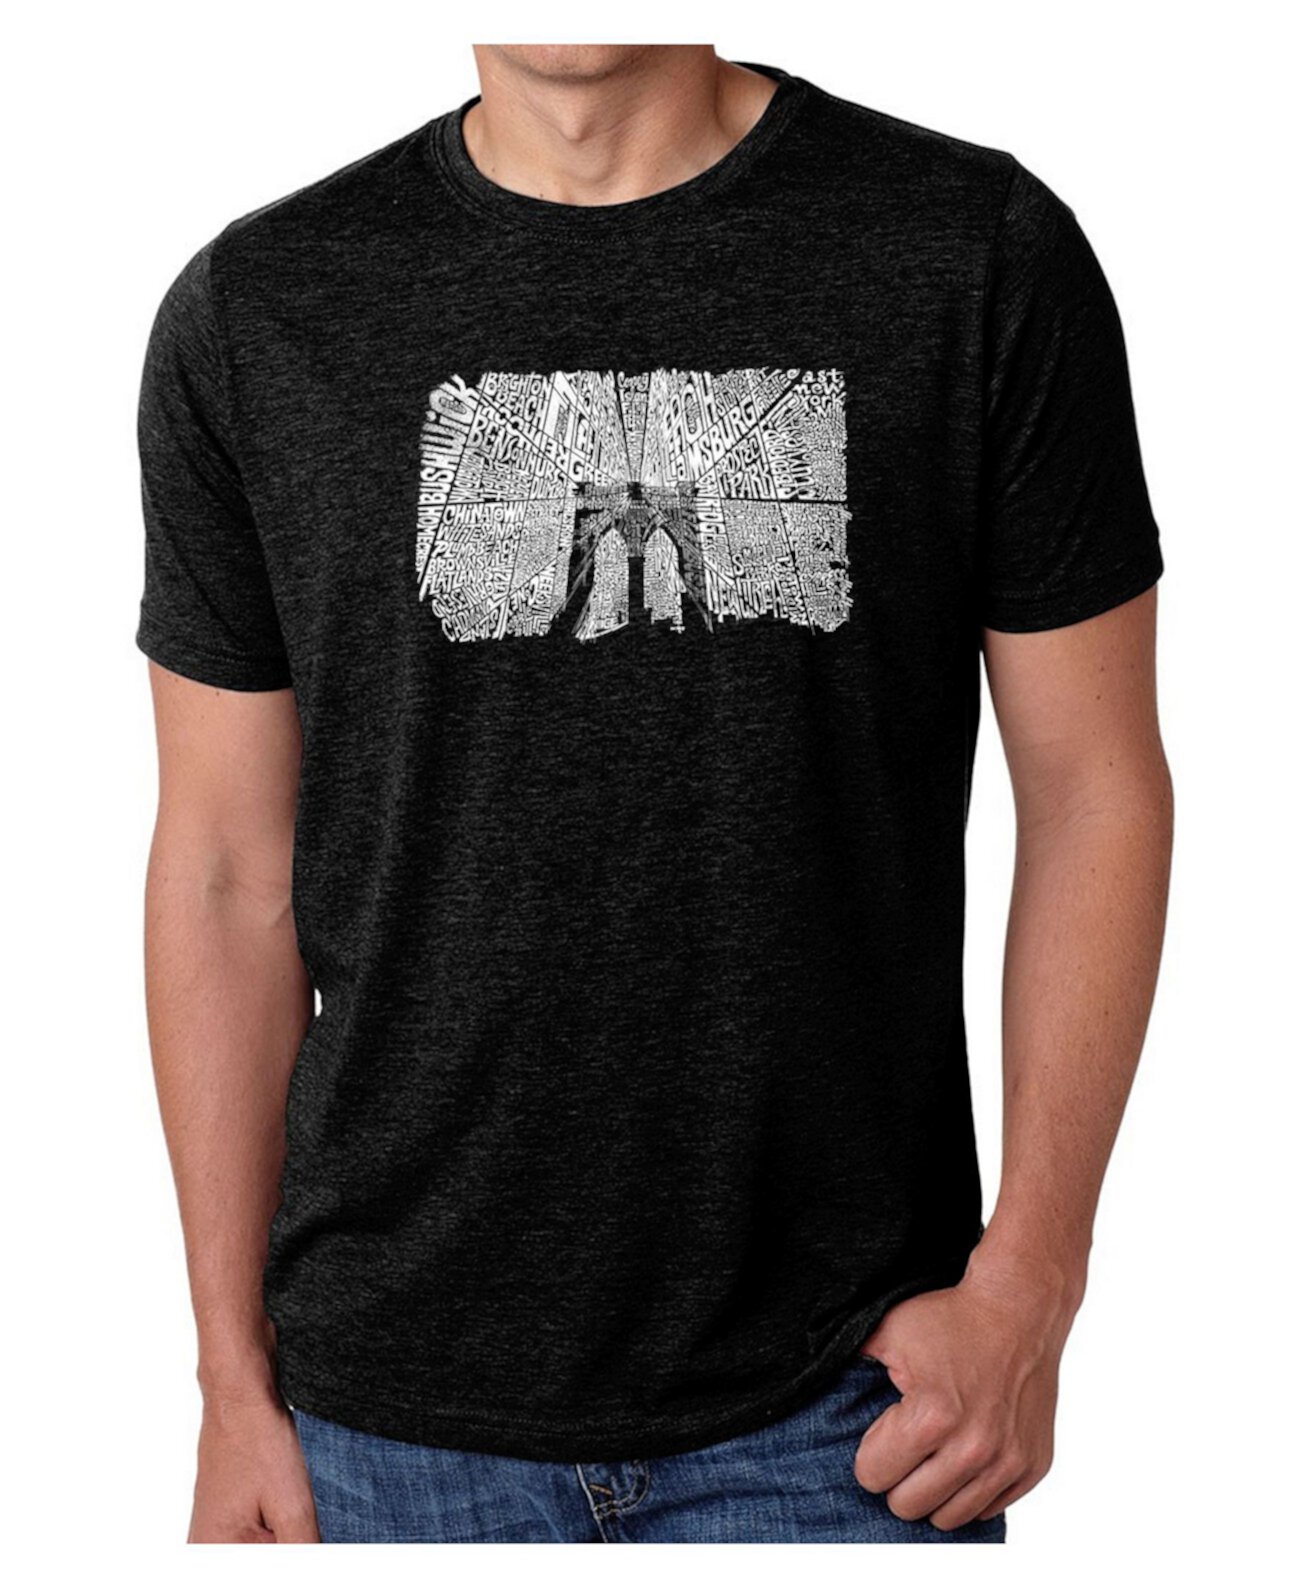 Мужская футболка премиум-класса с надписью Mens Premium - Бруклинский мост LA Pop Art